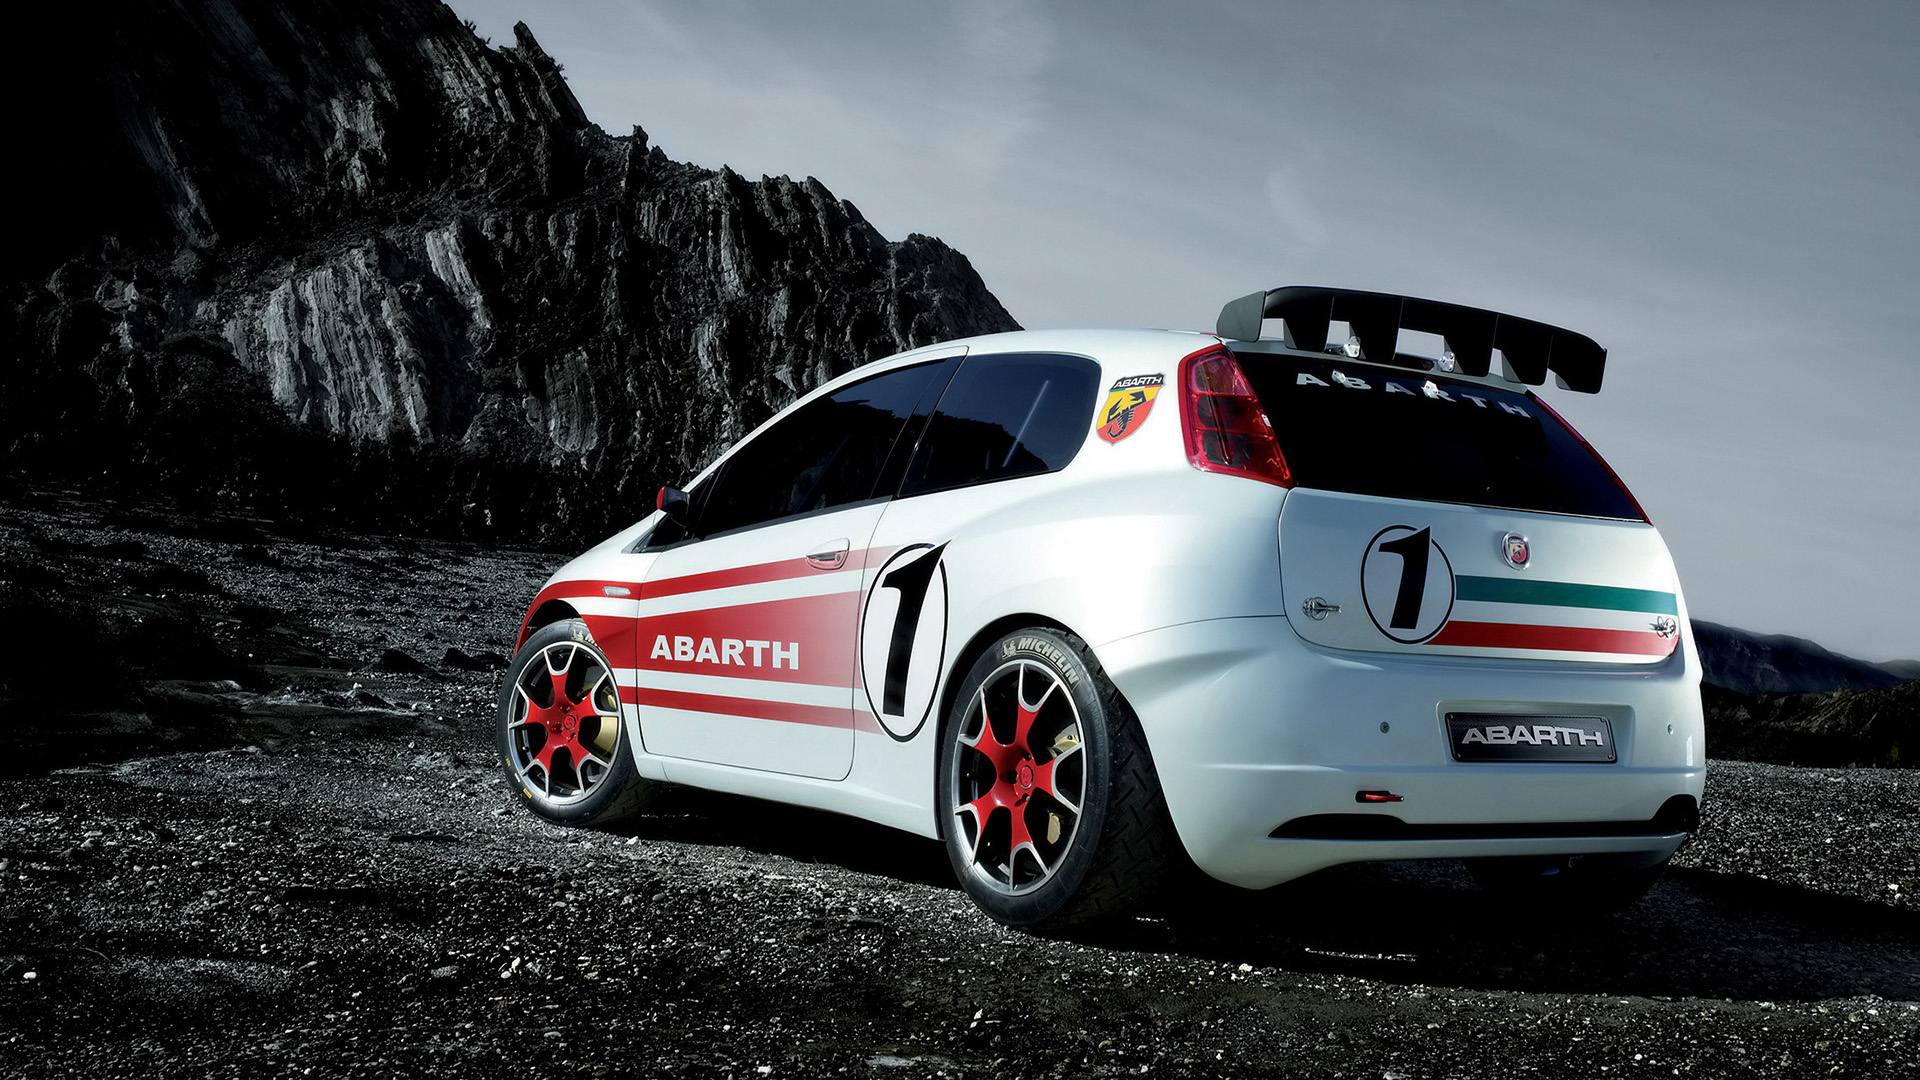  2007 Fiat Abarth Grande Punto S2000 Wallpaper.